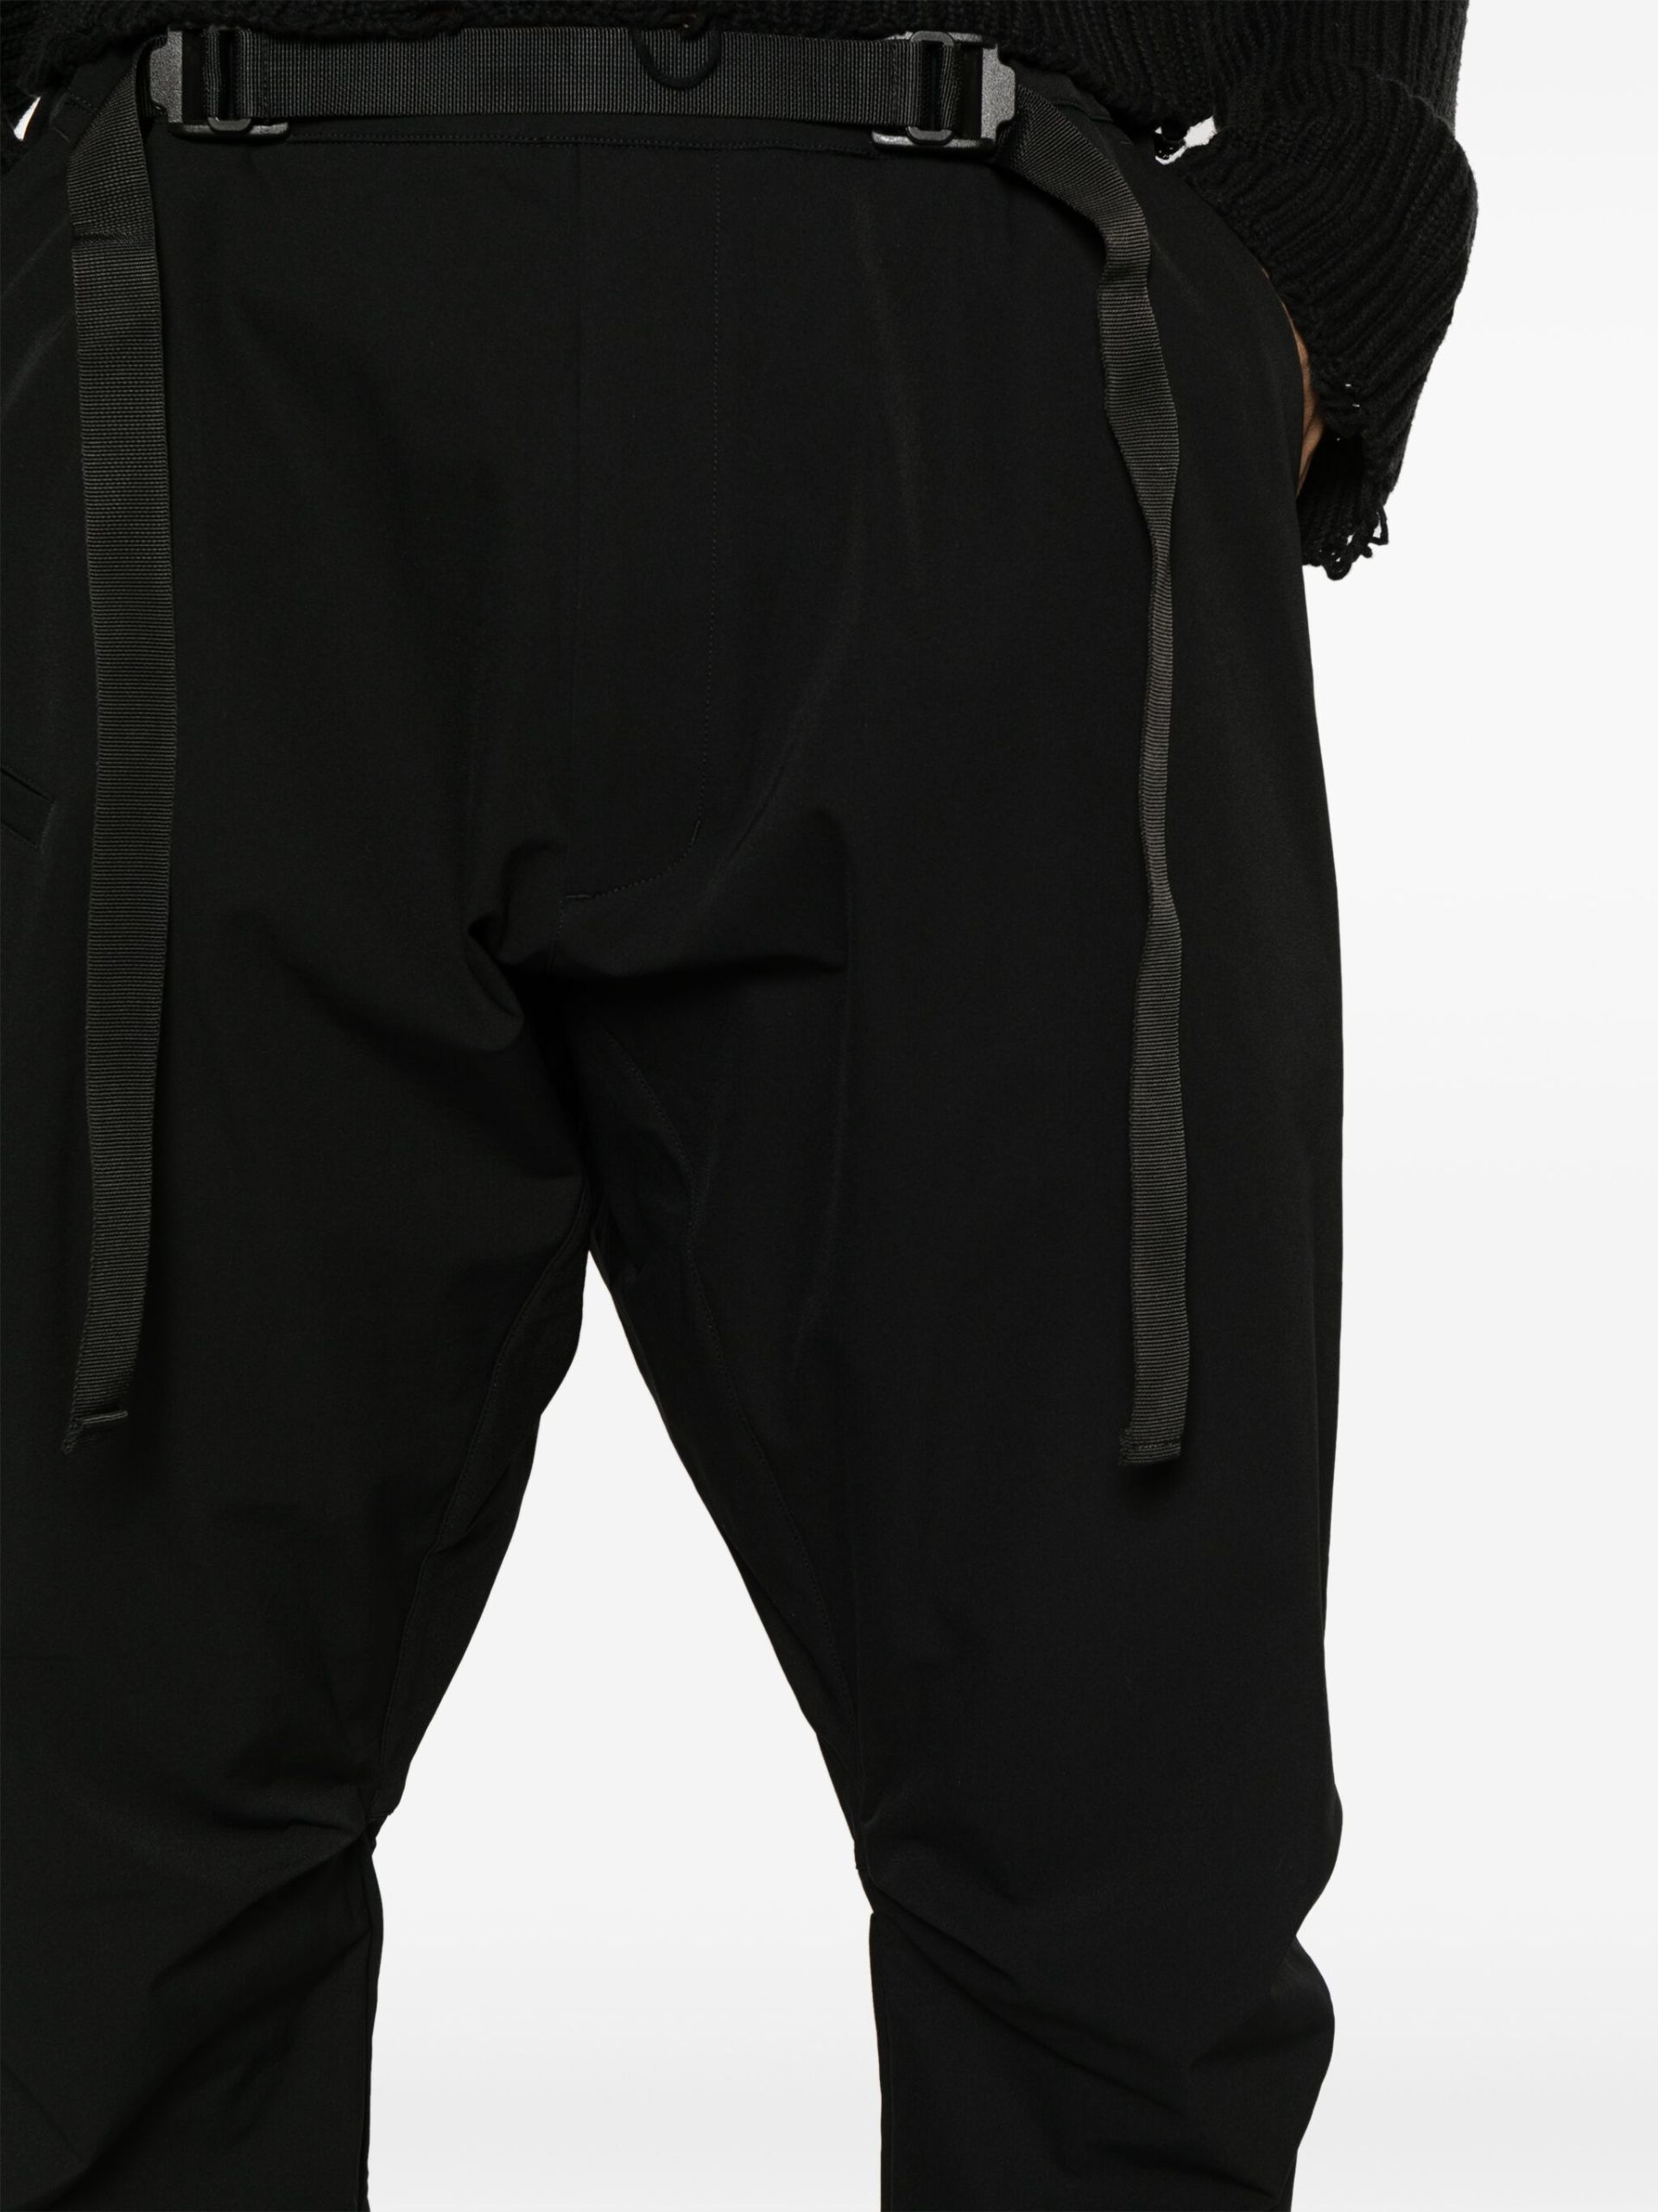 Black Schoeller Dryskin Drawcord Trousers - 5